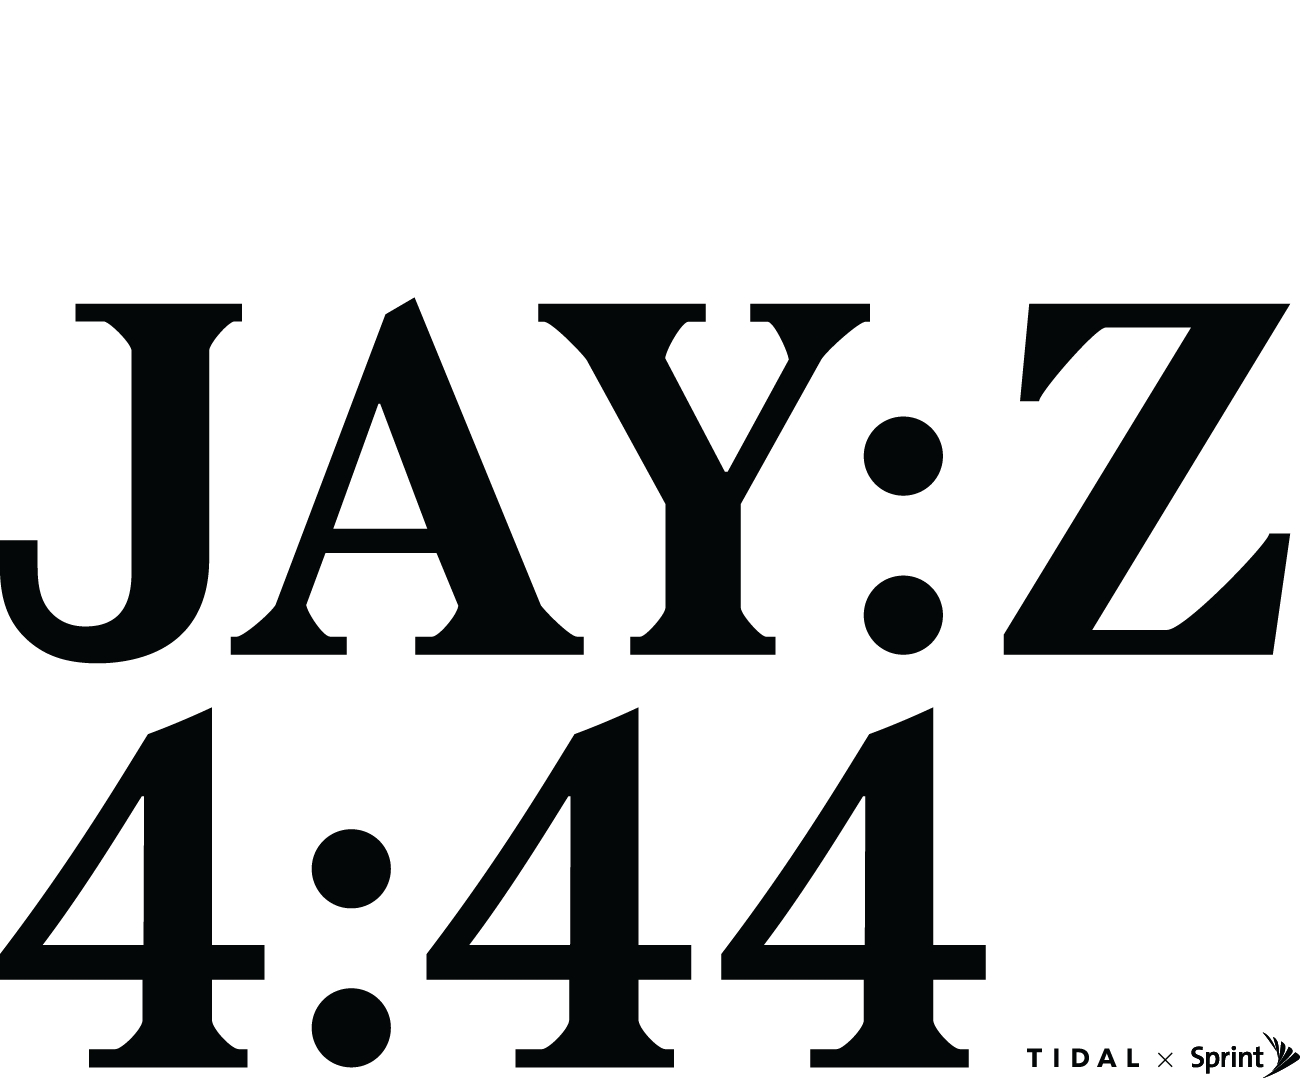 Jay-Z Logo - 444 | TIDAL